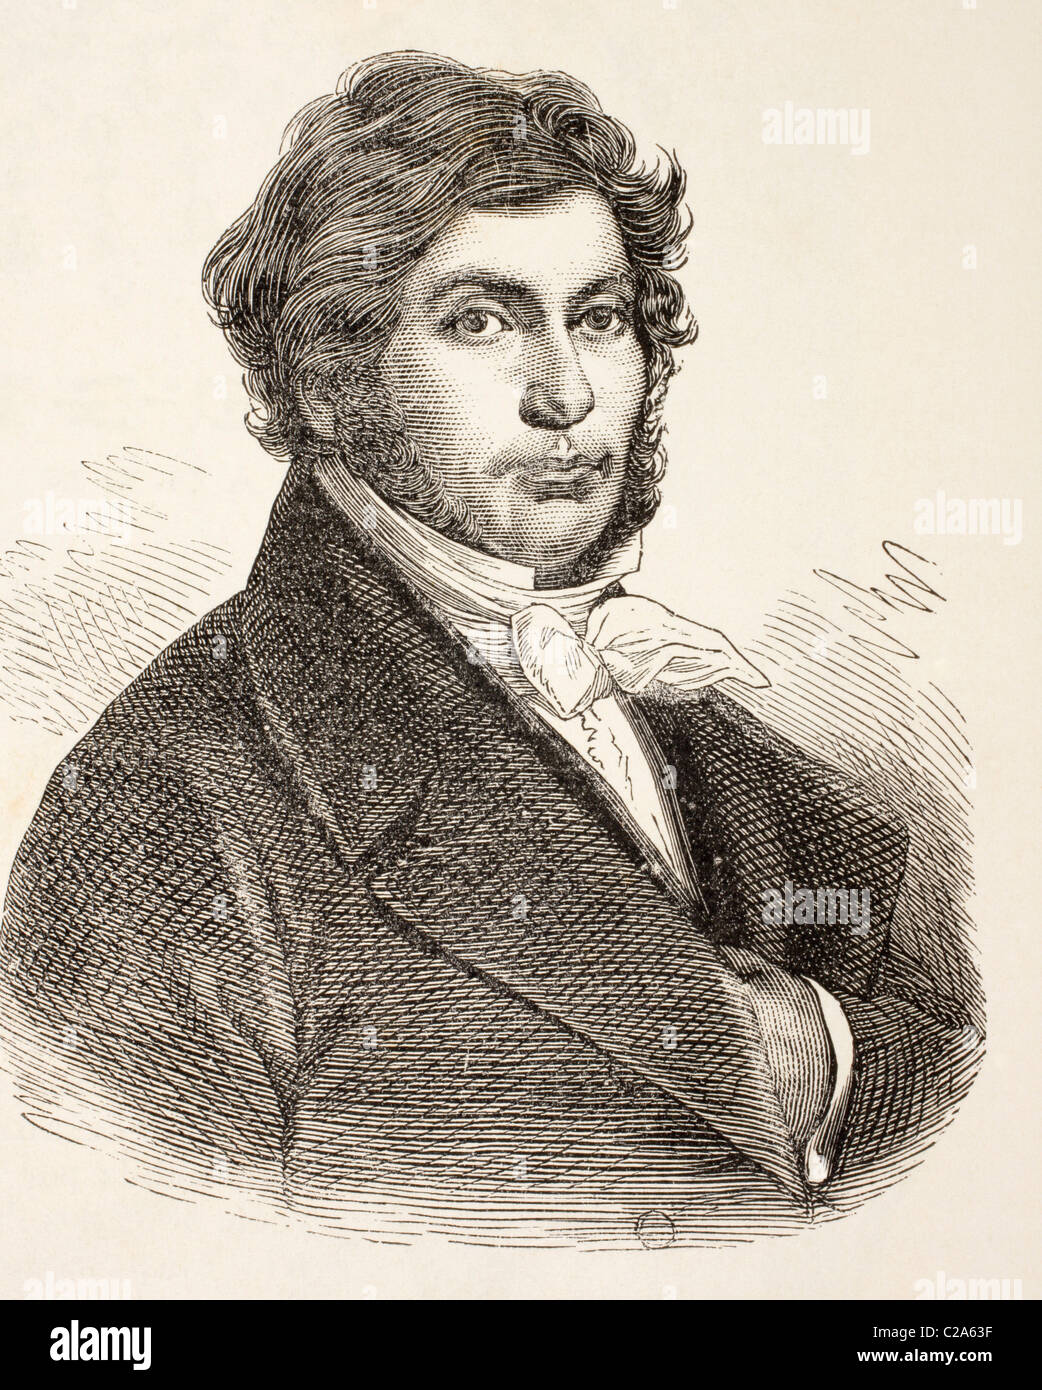 Jean-François Champollion, 1790 - 1832. Érudit classique français, philologue, orientaliste et decipherer de hiéroglyphe égyptien Banque D'Images